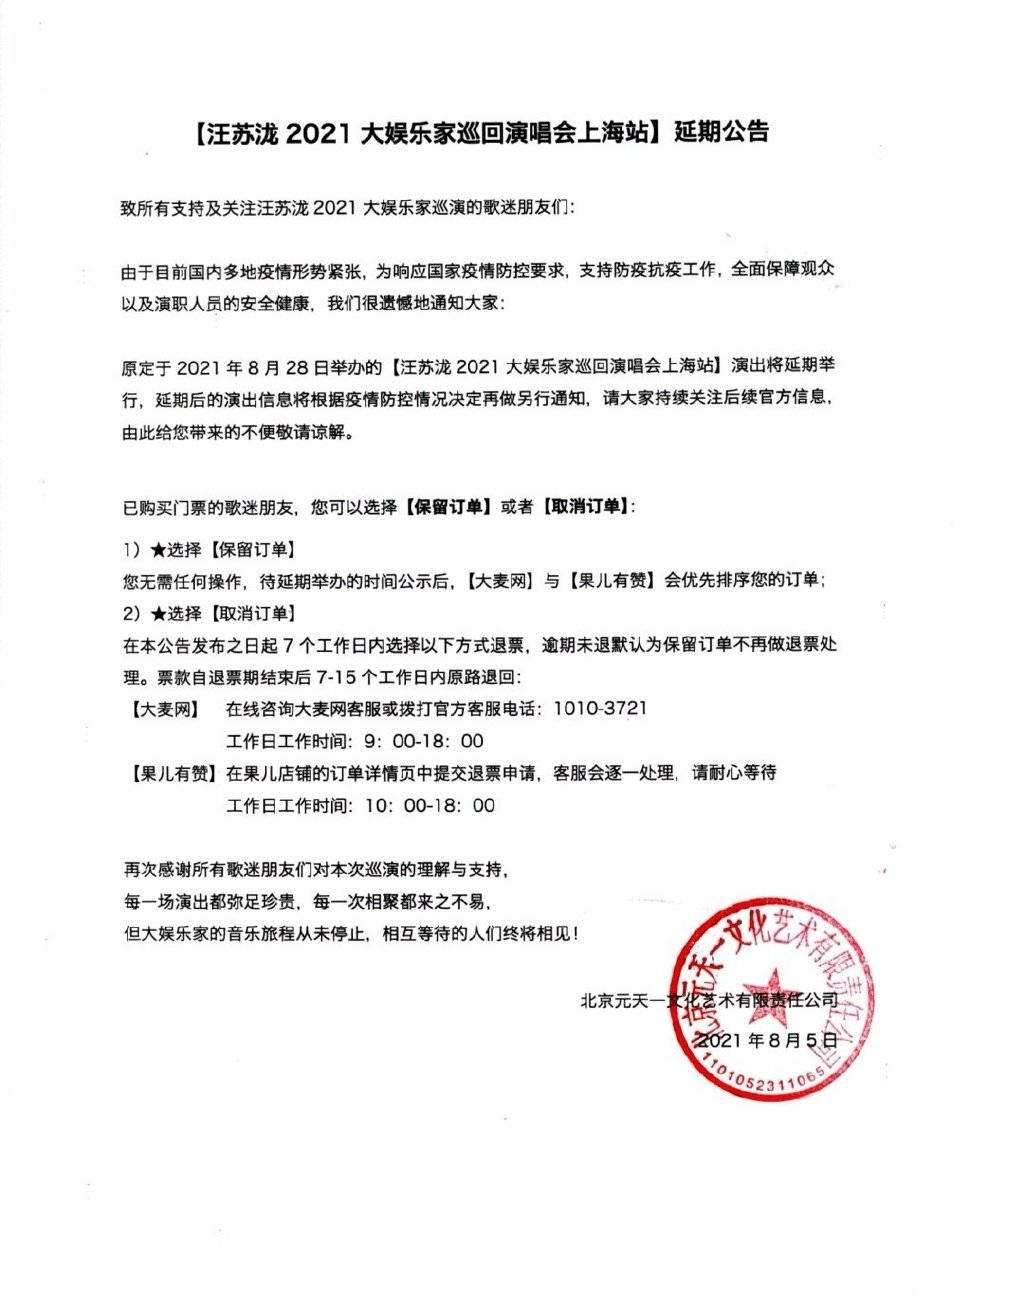 汪苏泷巡回演唱会上海站延期举行 可选择取消订单